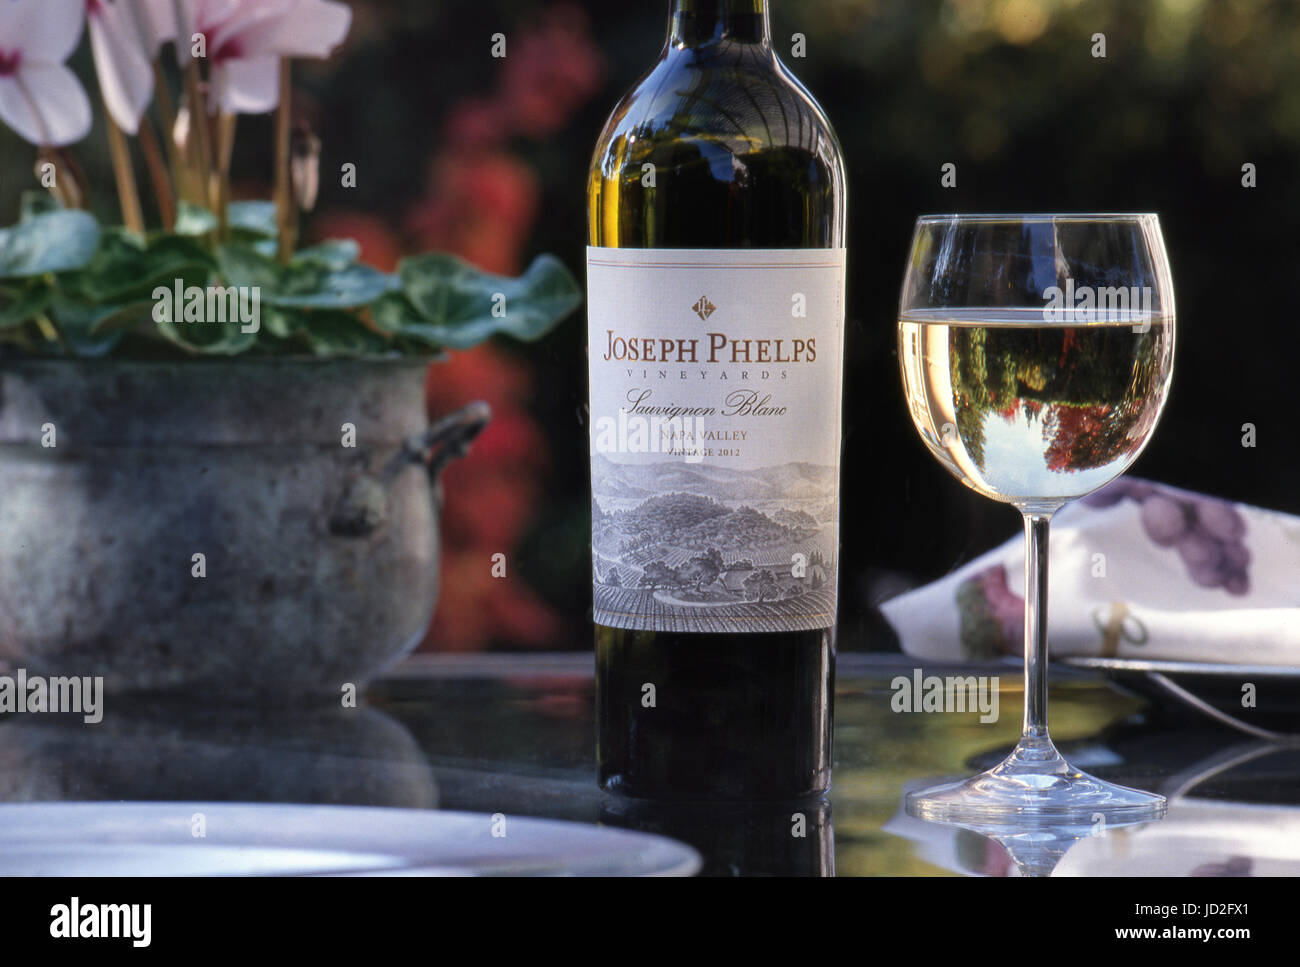 Joseph Phelps Sauvignon Blanc botella de vino blanco y copa, con reflejos florales en una elegante mesa de almuerzo al aire libre, Napa Valley, California. EE.UU Foto de stock